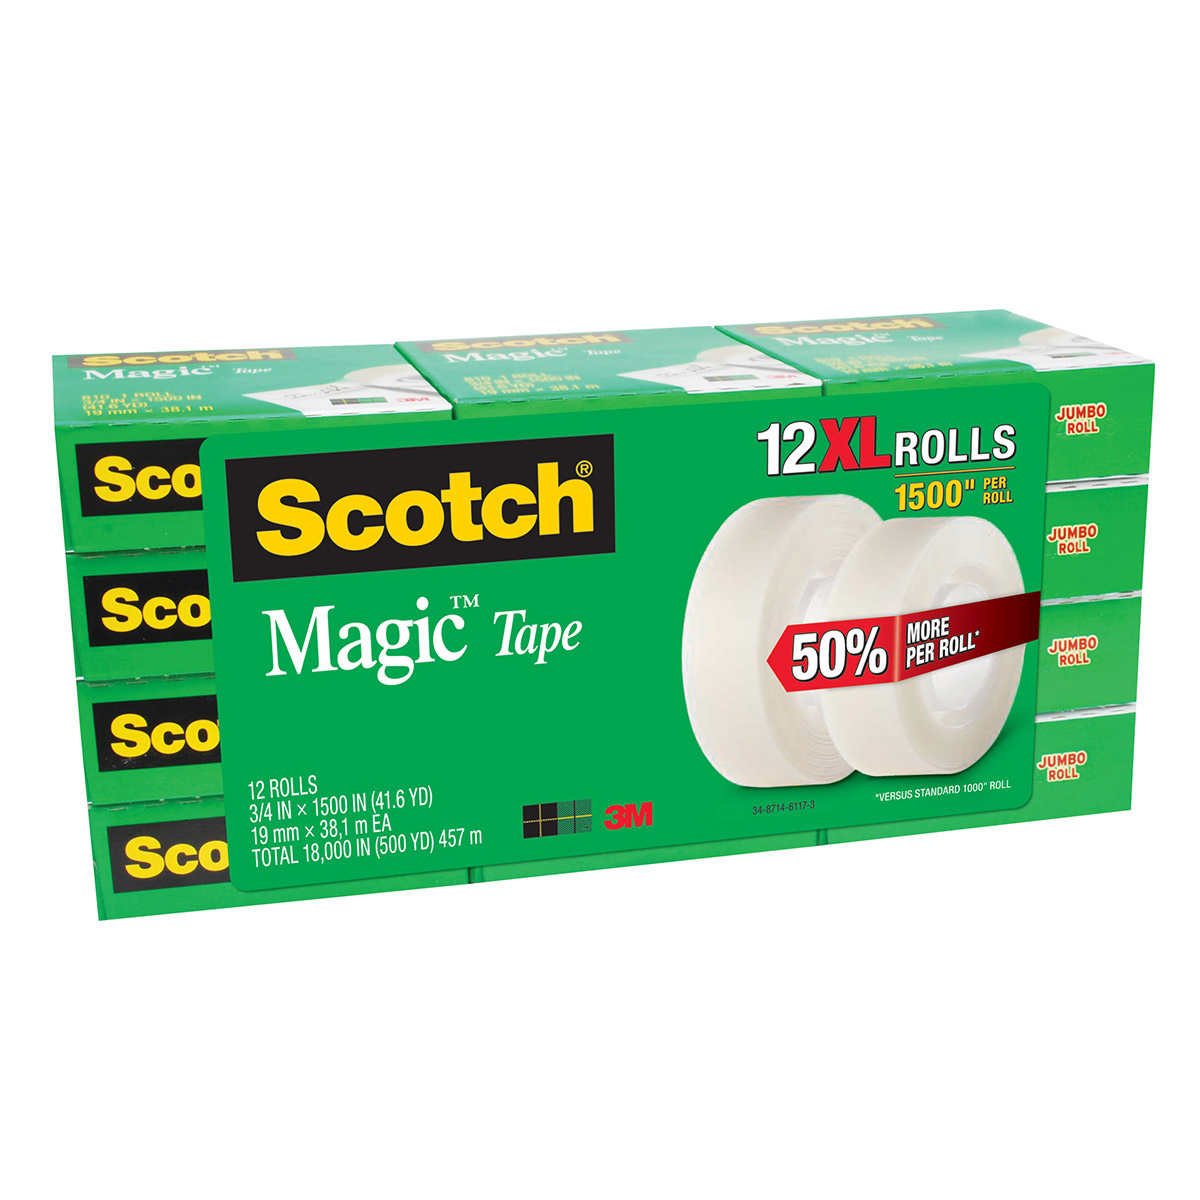 Scotch Magic Tape - 12 XL Rolls - 3/4 IN X 1500 IN - Cashier Depot